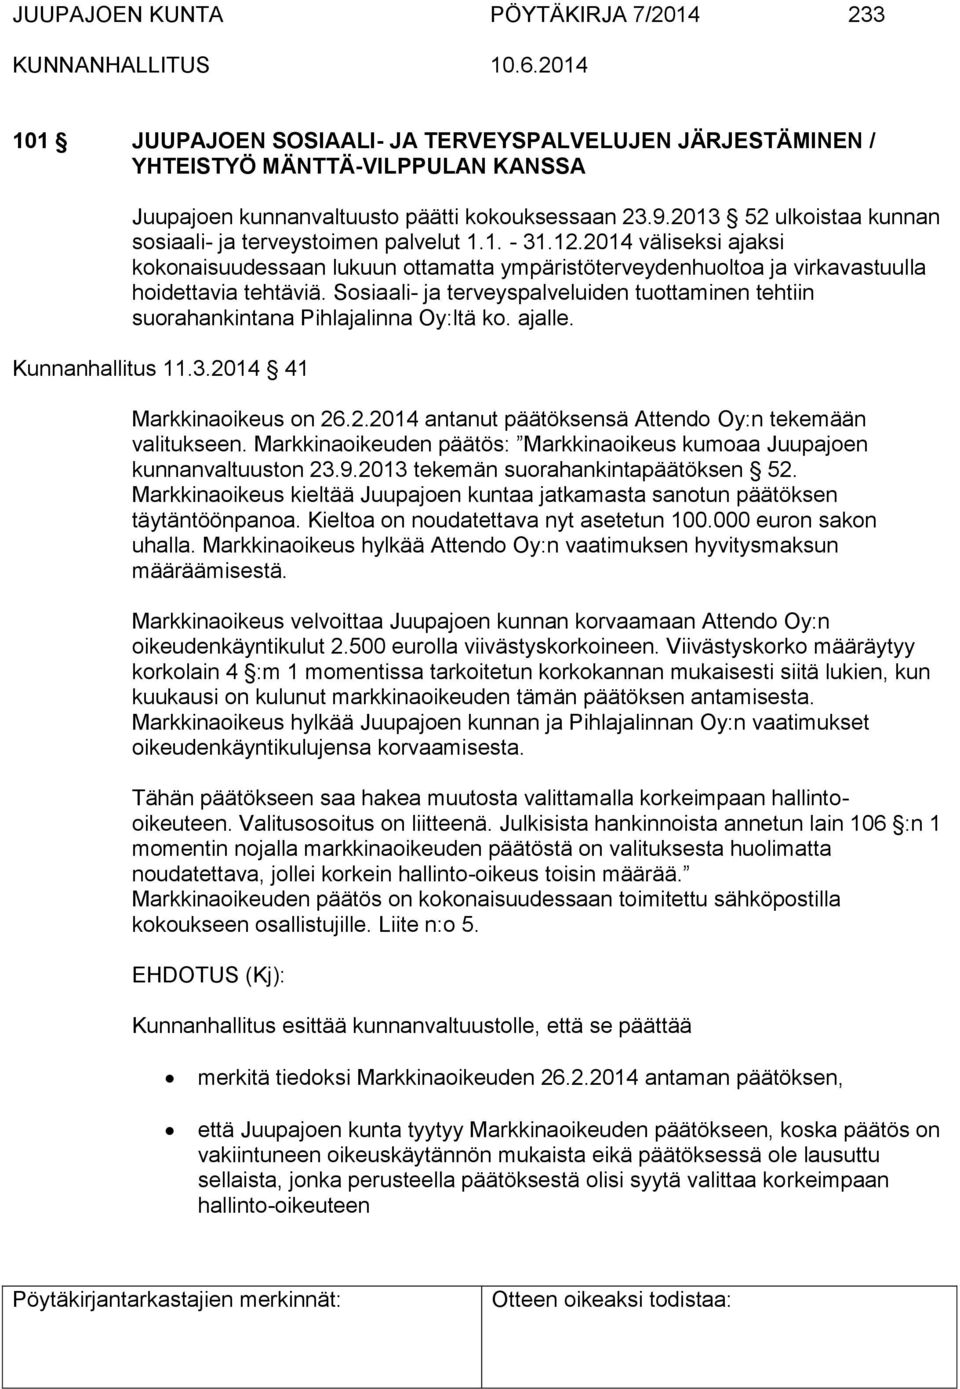 Sosiaali- ja terveyspalveluiden tuottaminen tehtiin suorahankintana Pihlajalinna Oy:ltä ko. ajalle. Kunnanhallitus 11.3.2014 41 Markkinaoikeus on 26.2.2014 antanut päätöksensä Attendo Oy:n tekemään valitukseen.